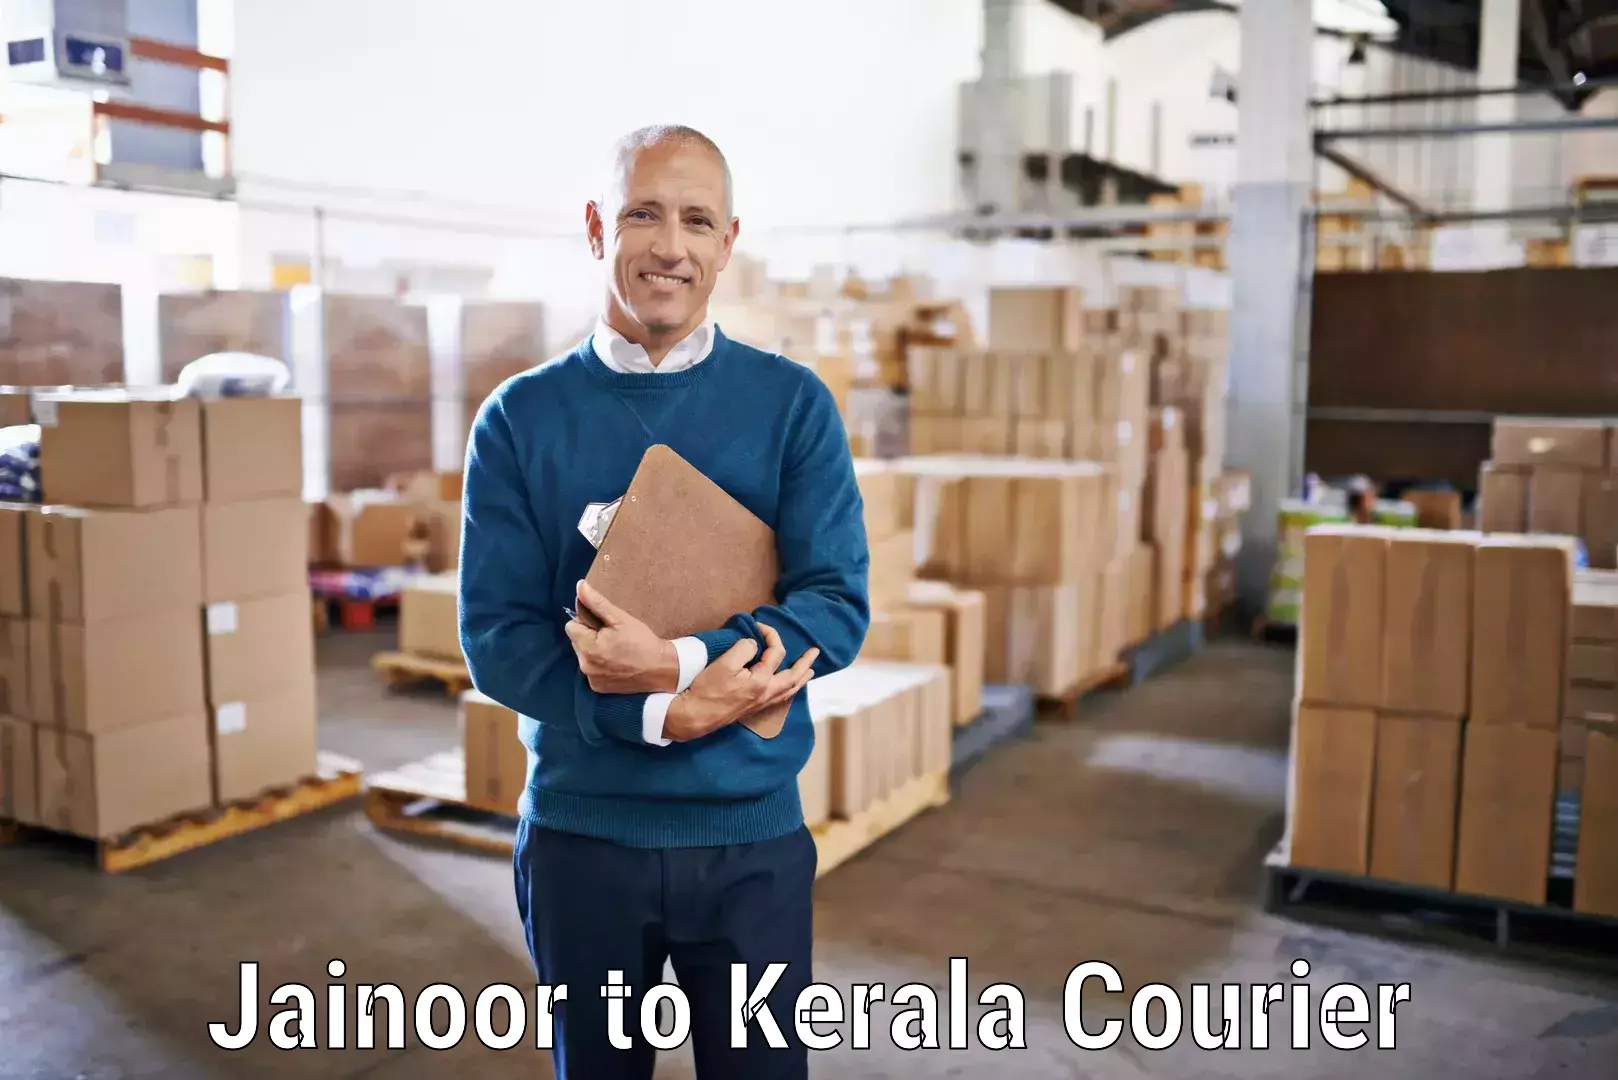 Next-generation courier services Jainoor to Perumbavoor